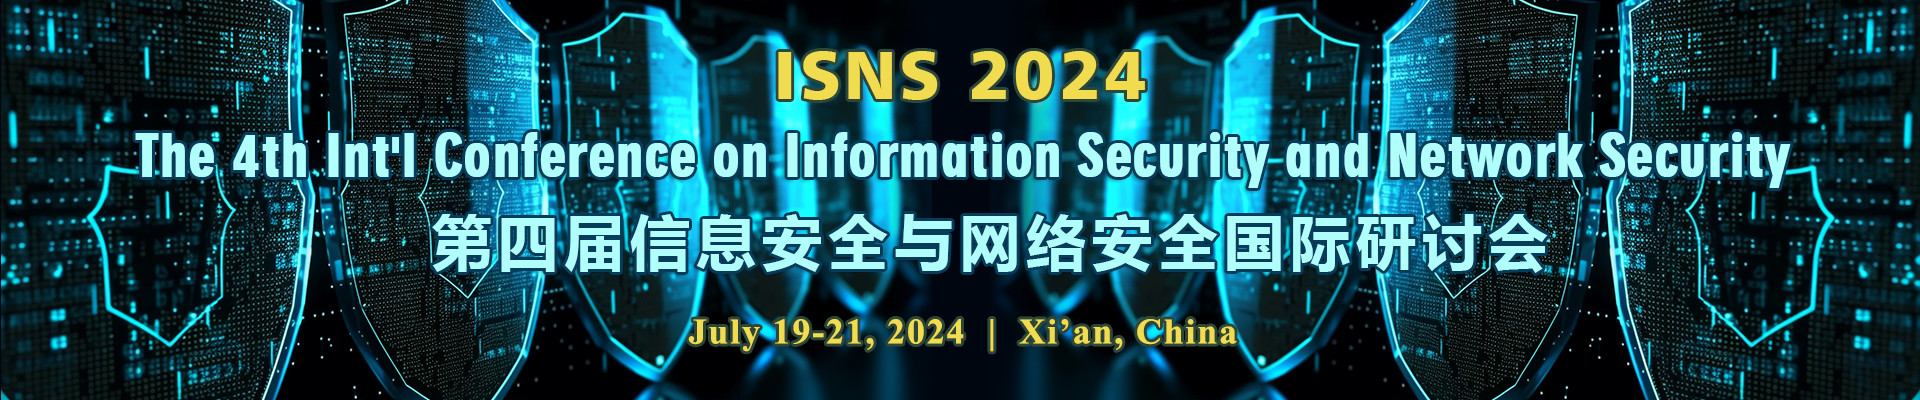 第四届信息安全与网络安全国际研讨会 (ISNS 2024) 